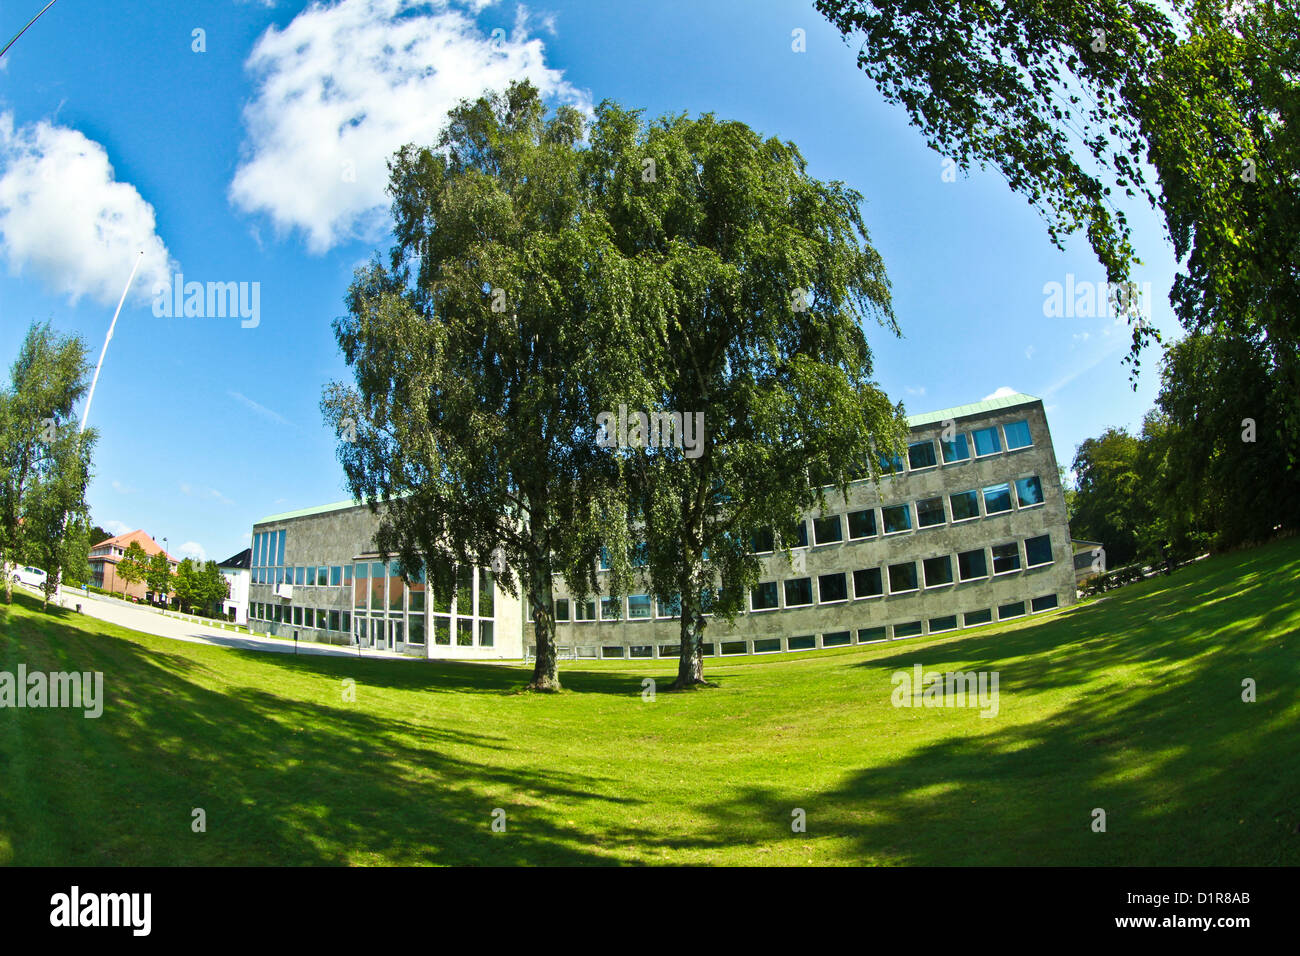 Arne Jacobsen designed Town Hall (Rådhus) in Holte, Denmark Stock Photo